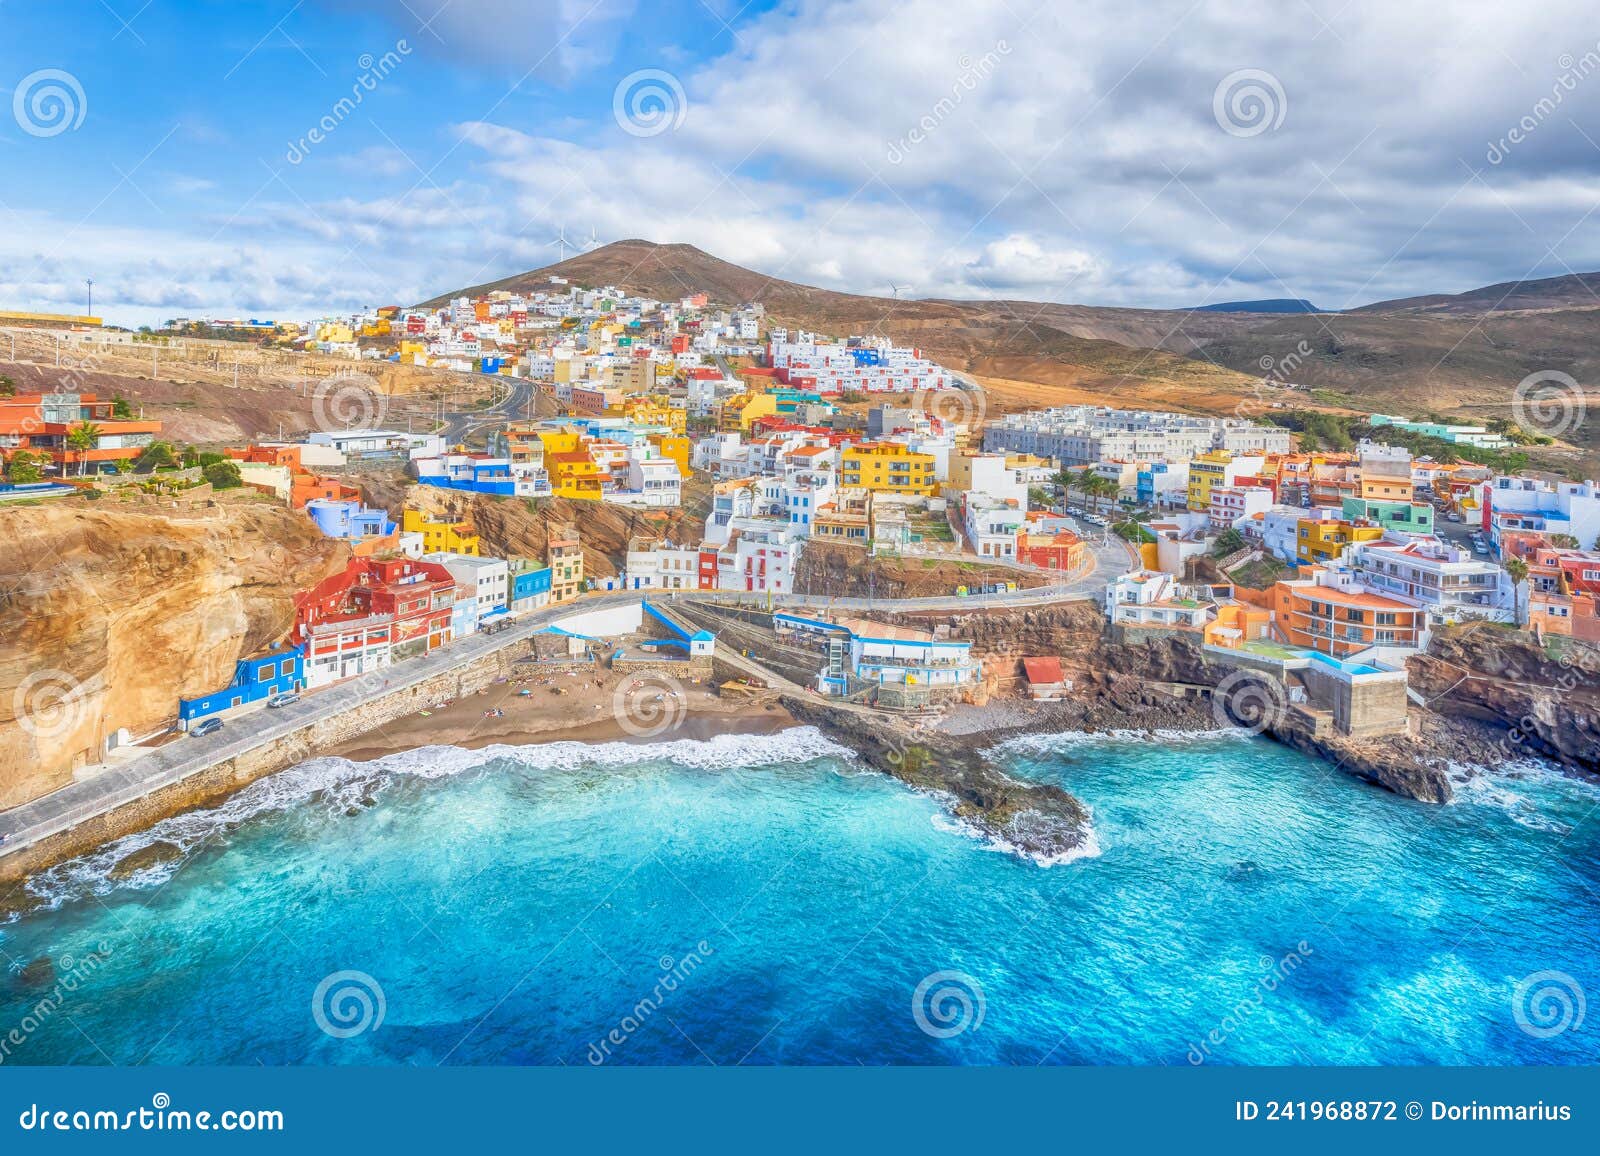 landscape with sardina de galda and north beach sardina, gran canaria